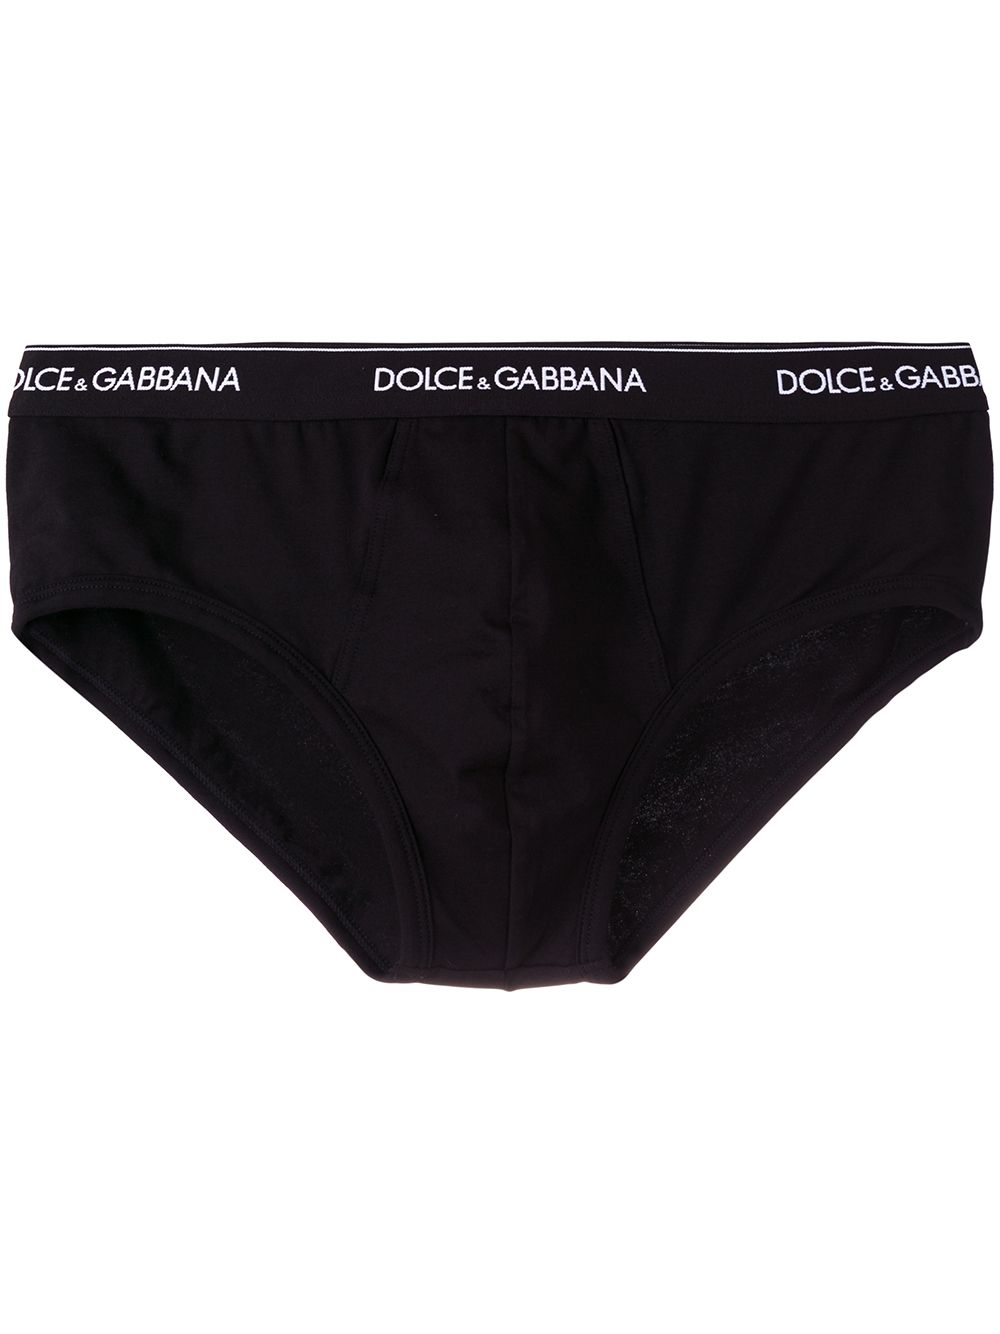 Dolce & Gabbana Logo Waistband Briefs - Farfetch